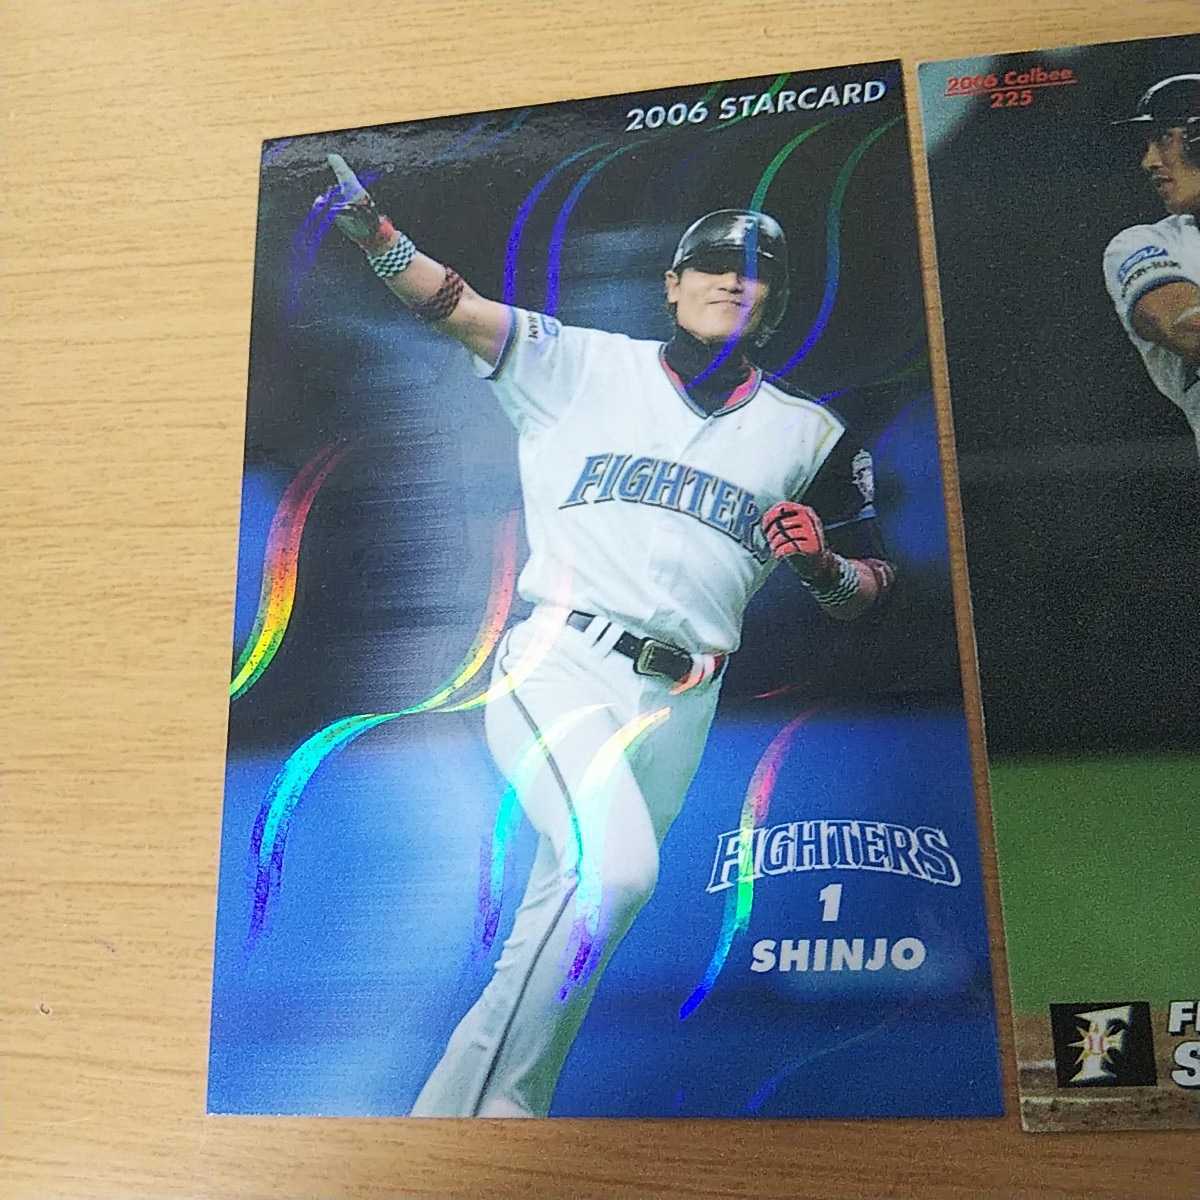 プロ野球チップス カルビー カードコレクション 新庄剛志 キラキラ 